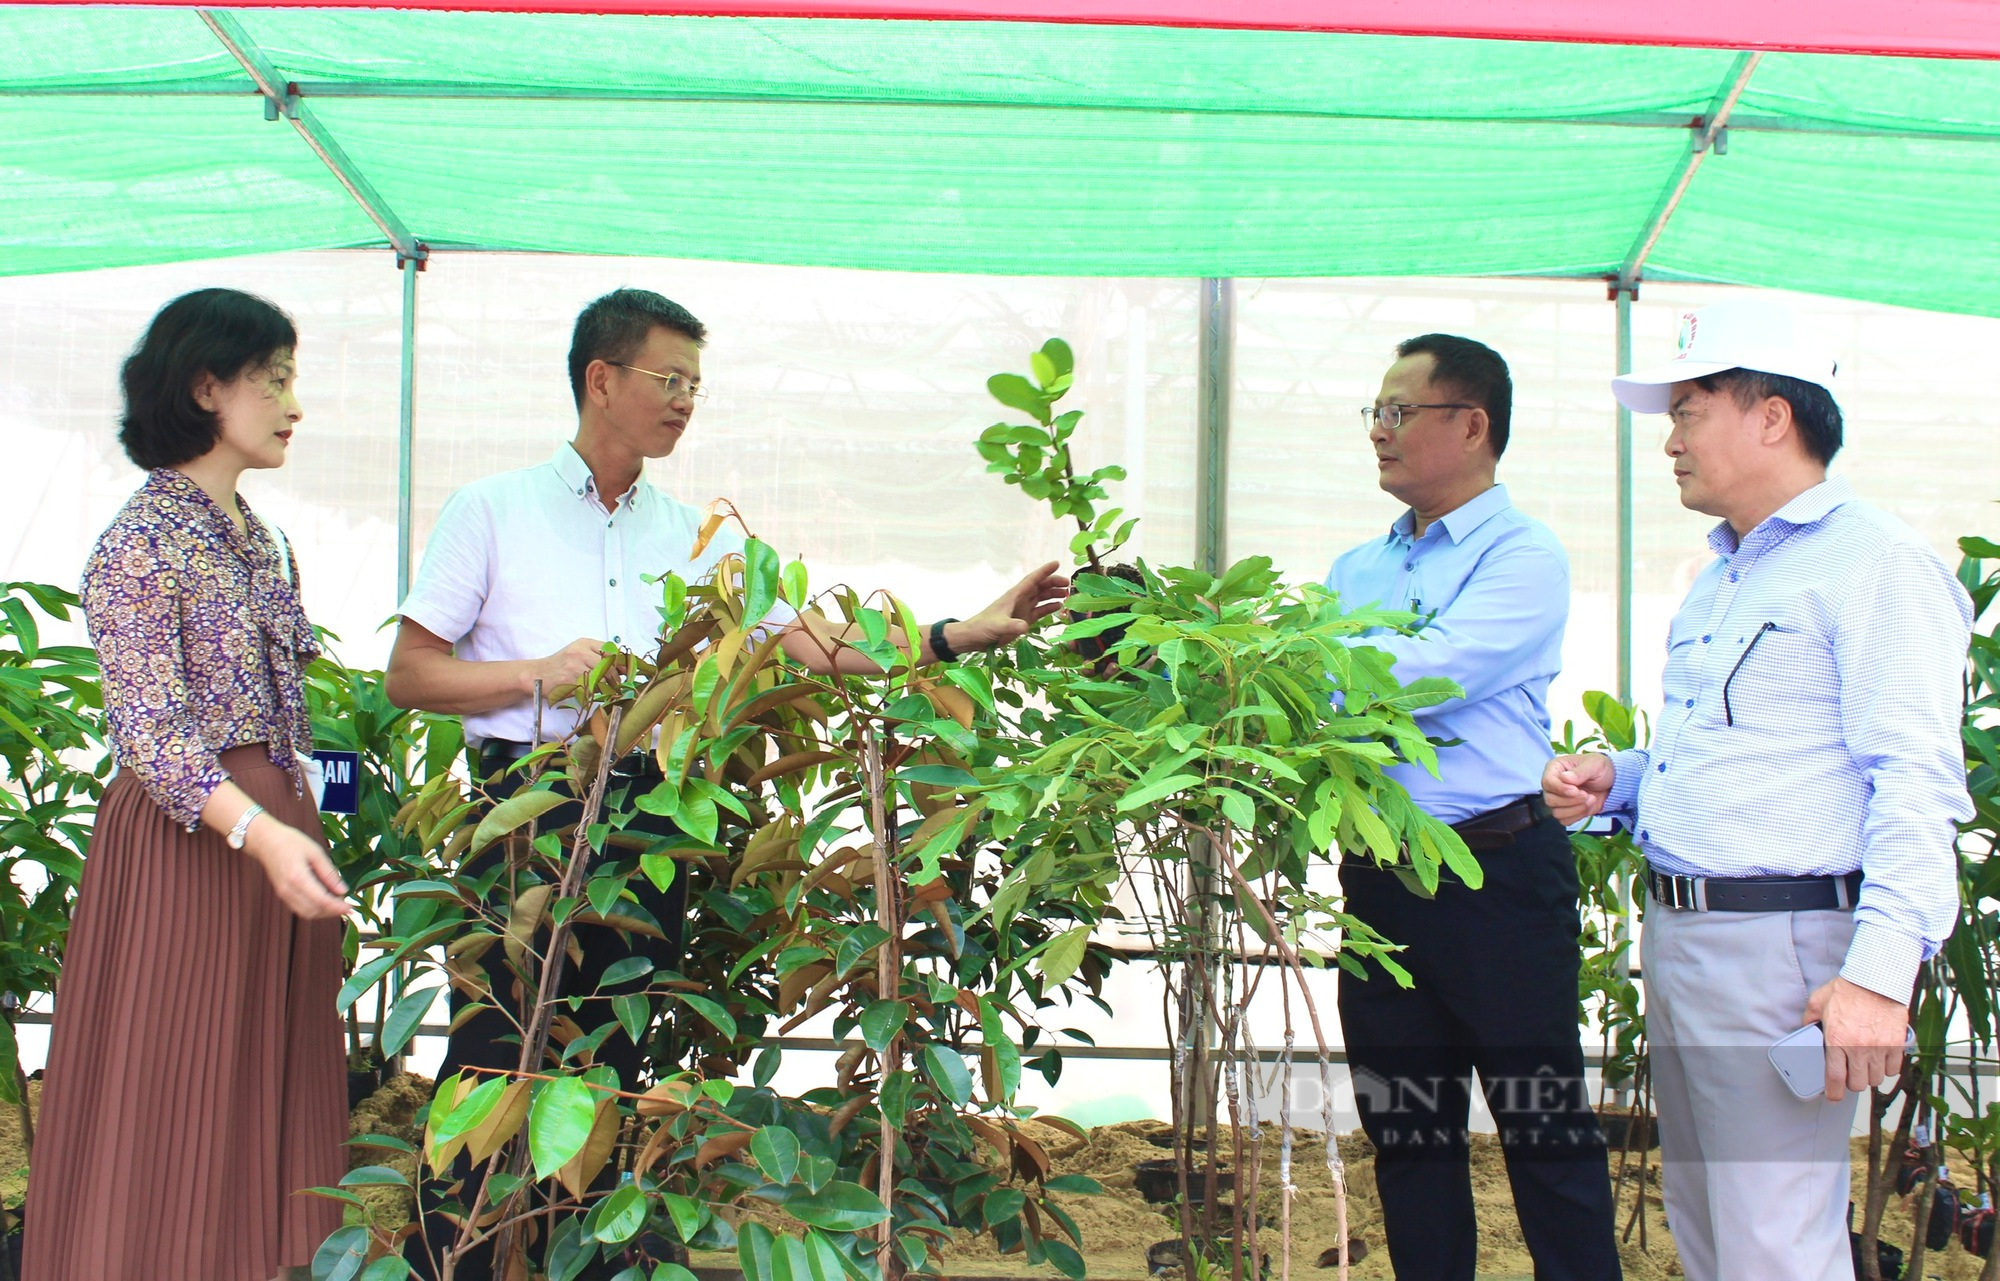 Hội Nông dân Quảng Bình khai trương Điểm cung ứng cây trồng chất lượng, năng suất cho nông dân - Ảnh 1.